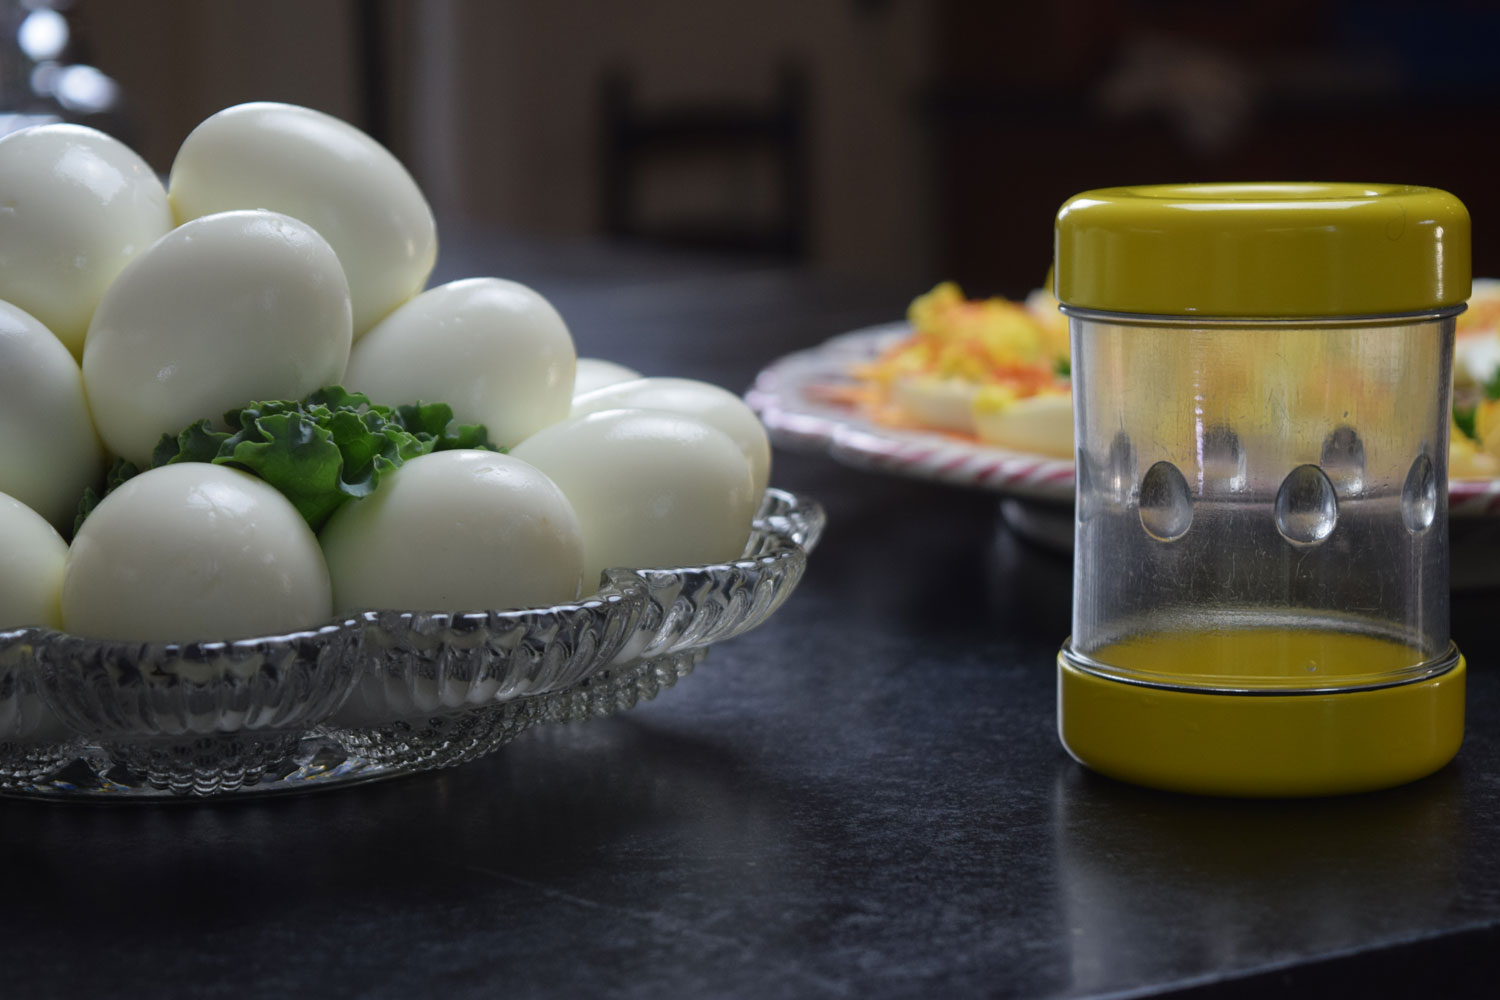 Negg Hard-Boiled Egg Peeler - White 